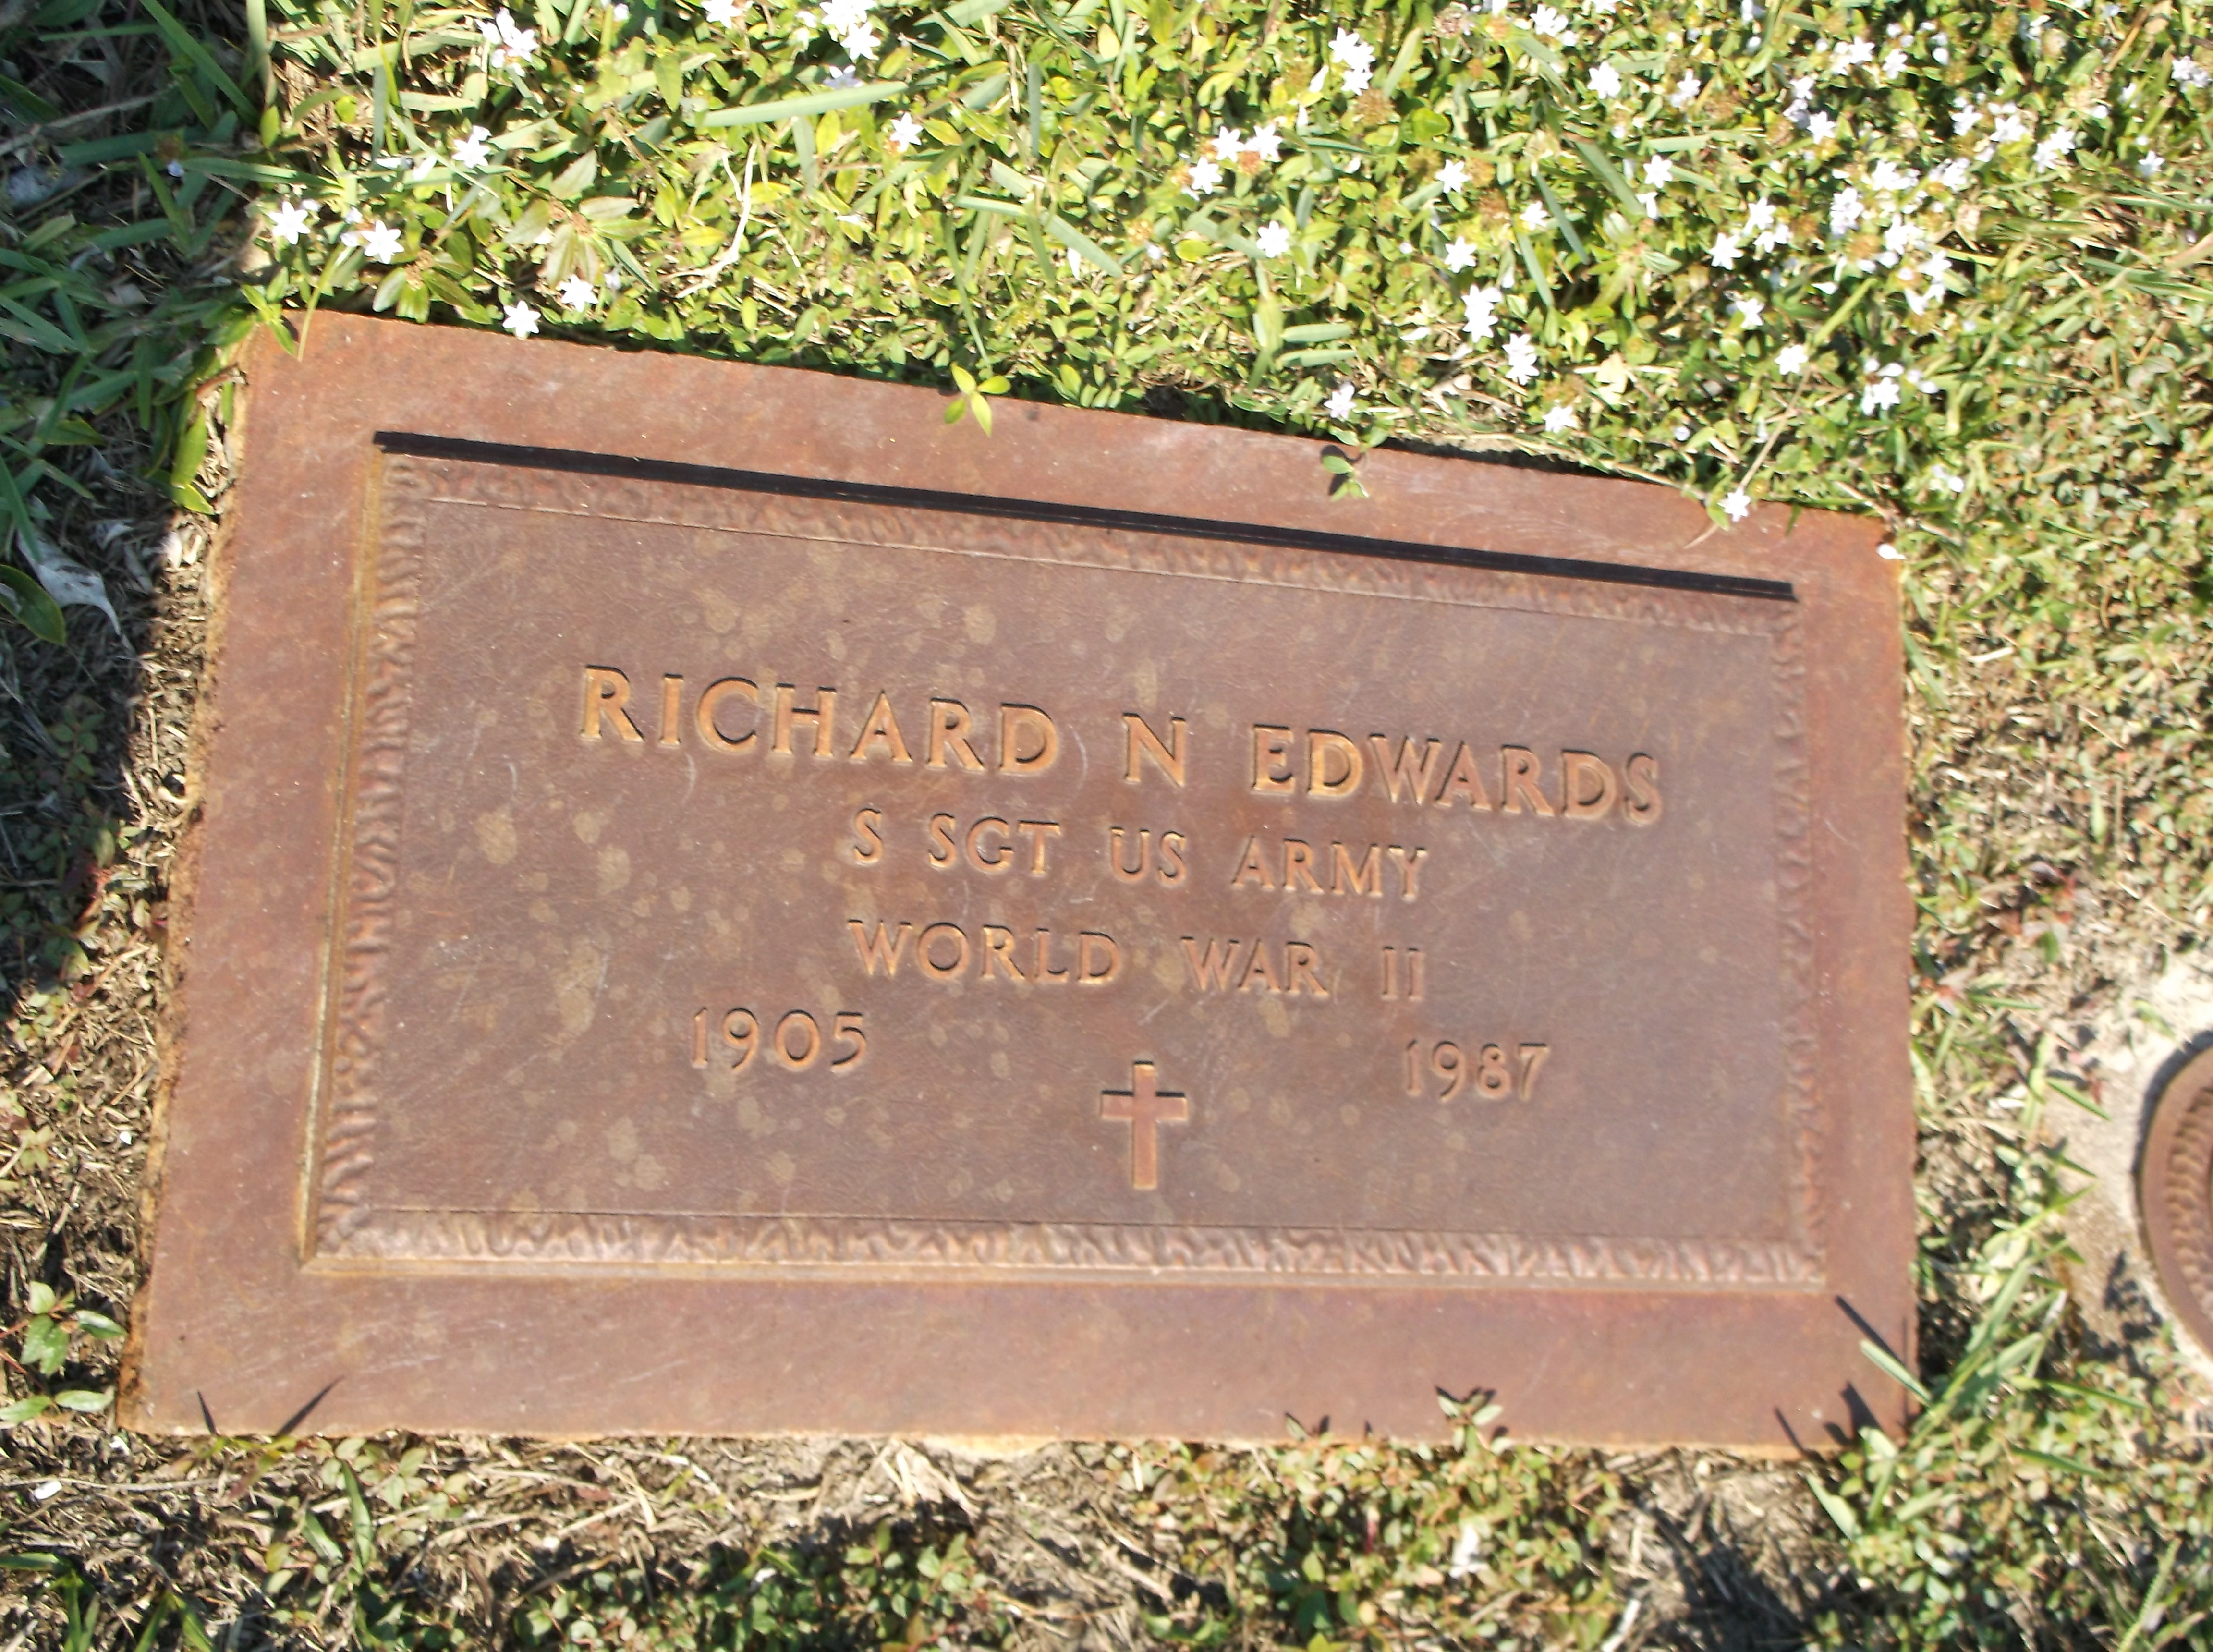 Richard N Edwards